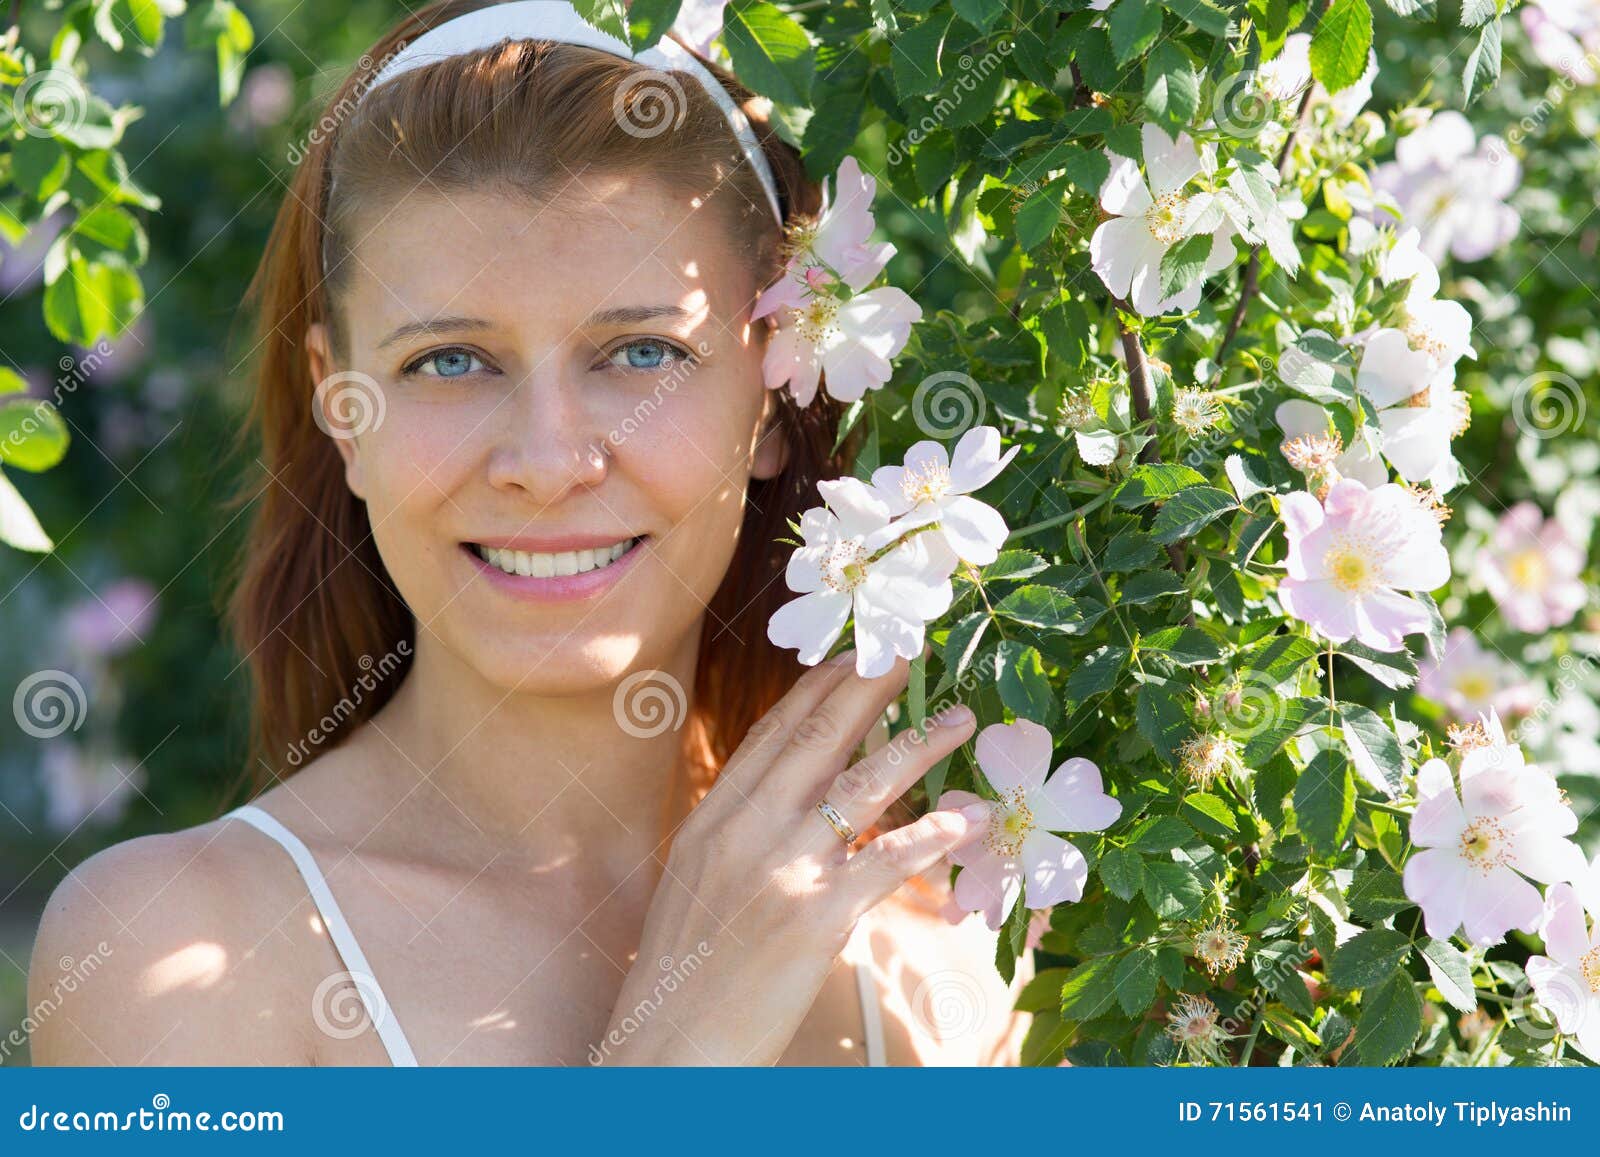 Beauty woman with flowers in garden - beauty-woman-flowers-garden-blossom-71561541